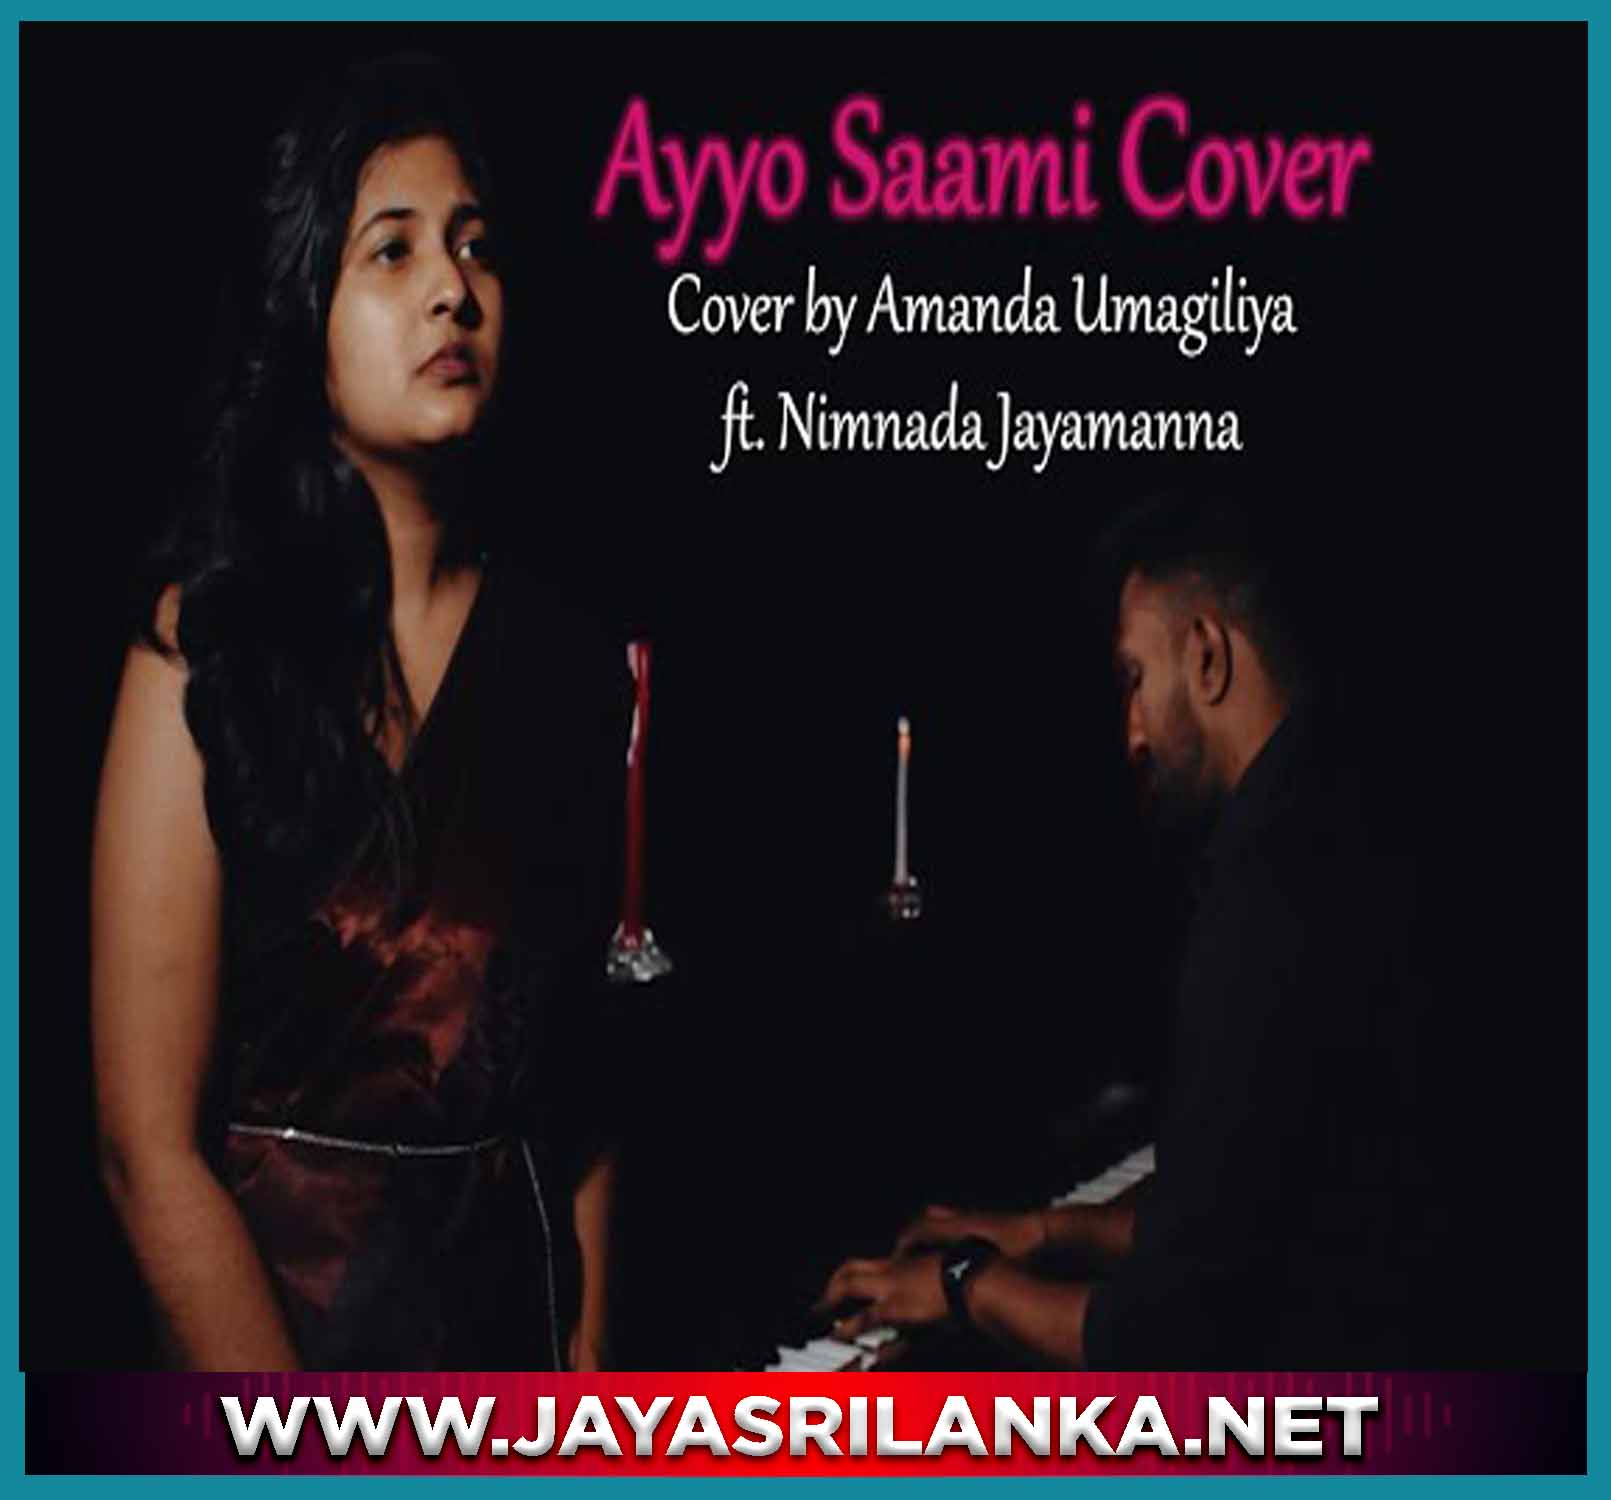 Ayyo Saami Cover